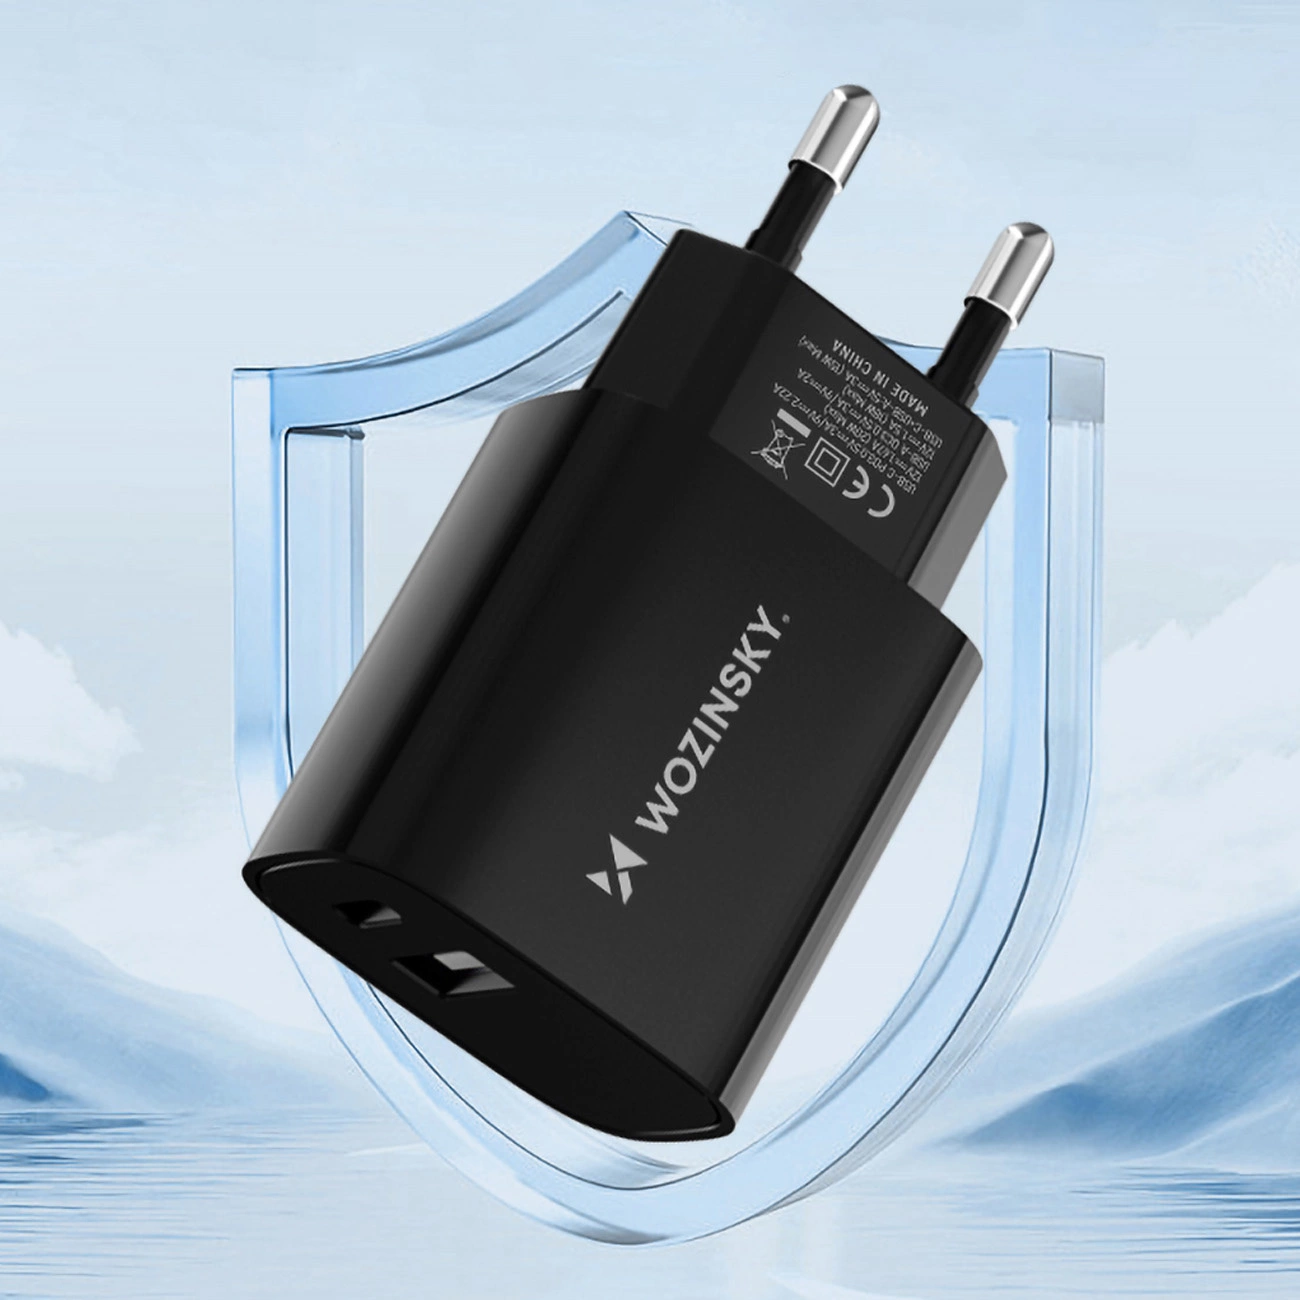 Wozinsky WGWCB Wandladegerät mit USB-A- und USB-C-Anschlüssen mit einer Leistung von bis zu 20 W vor dem Hintergrund der Berge